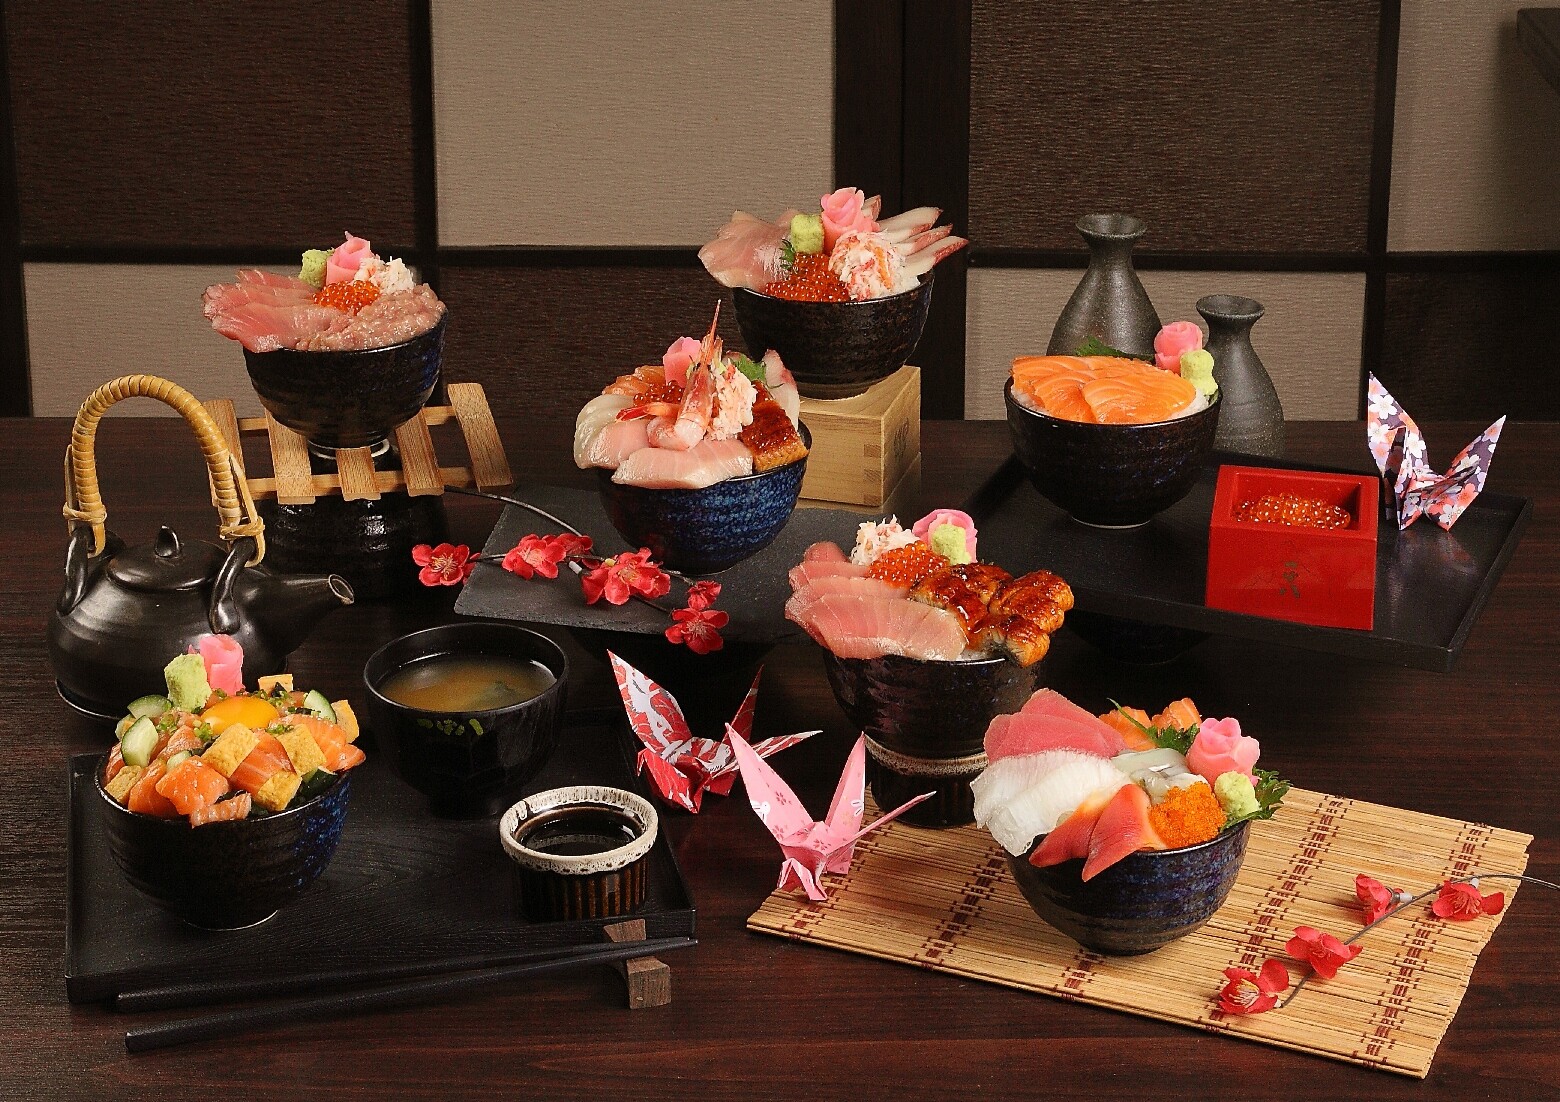 "สึโบฮาจิ" เอาใจคนรักเมนูปลากับโปรโมชั่น "เรียวโอะชิด้ง" ดงบุริสไตล์ญี่ปุ่น 7 เมนู ในราคาสุดคุ้ม